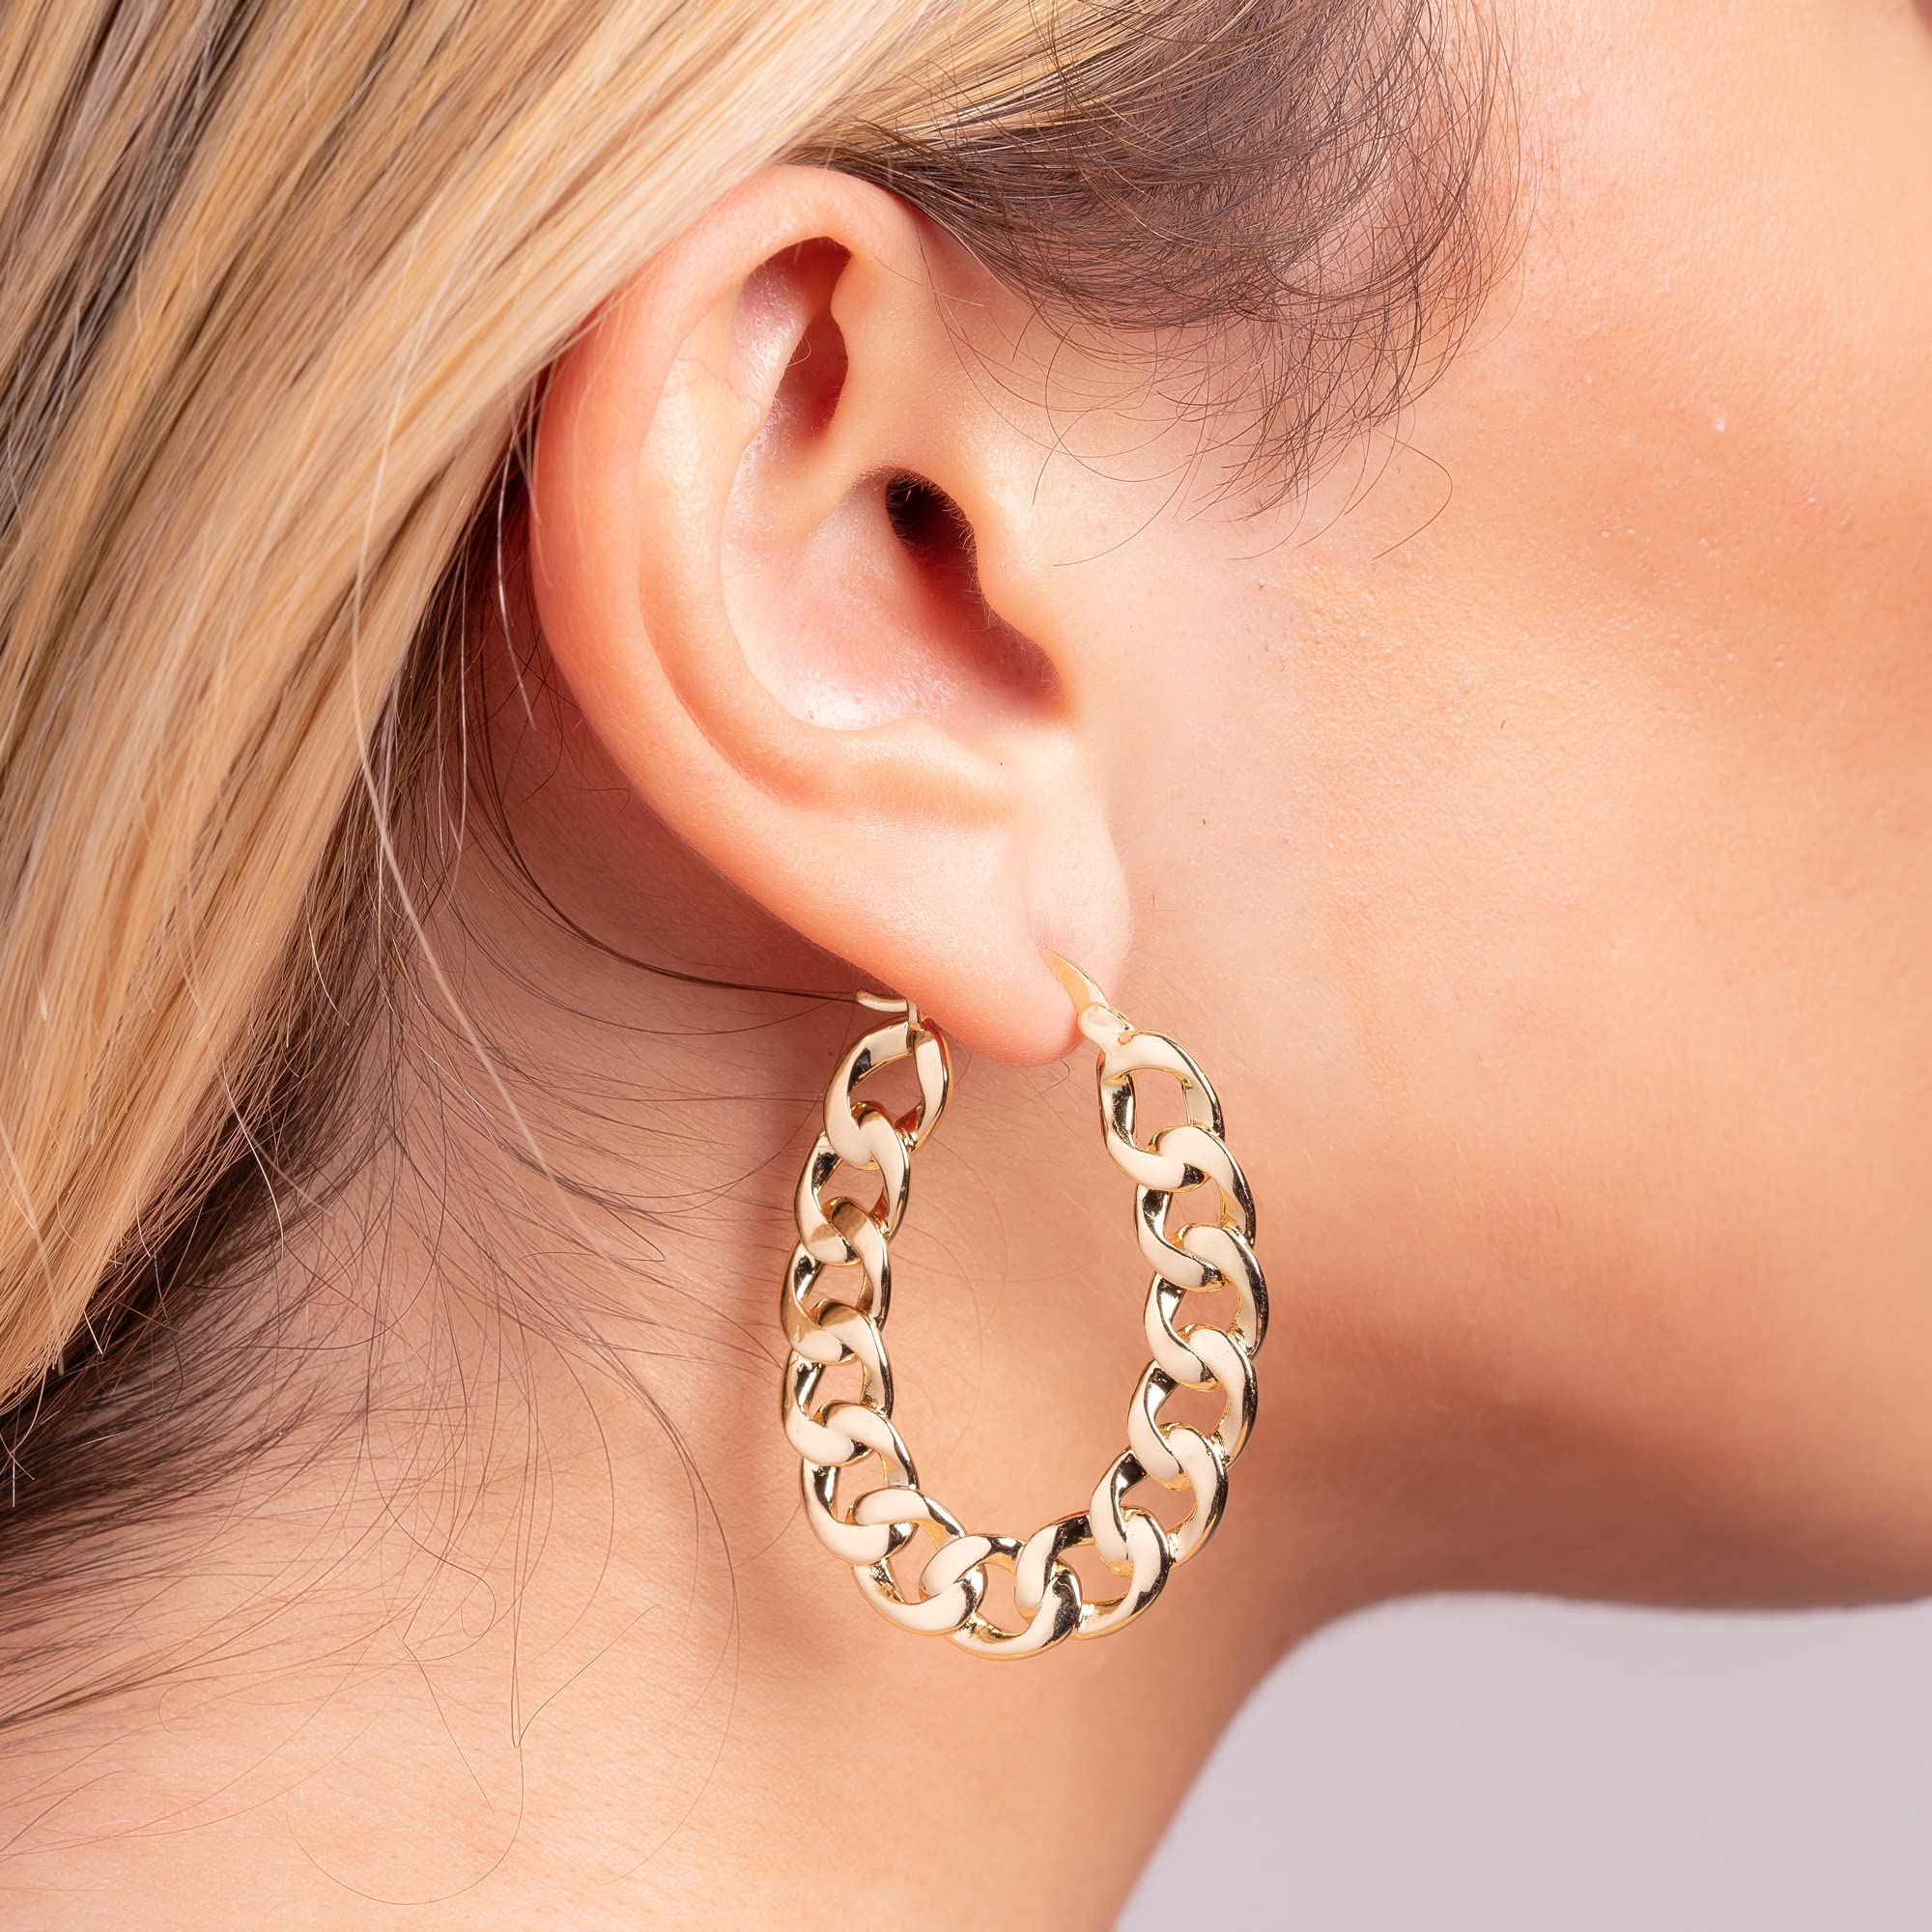 18K Gold Plated Chain Link Hoop Earrings